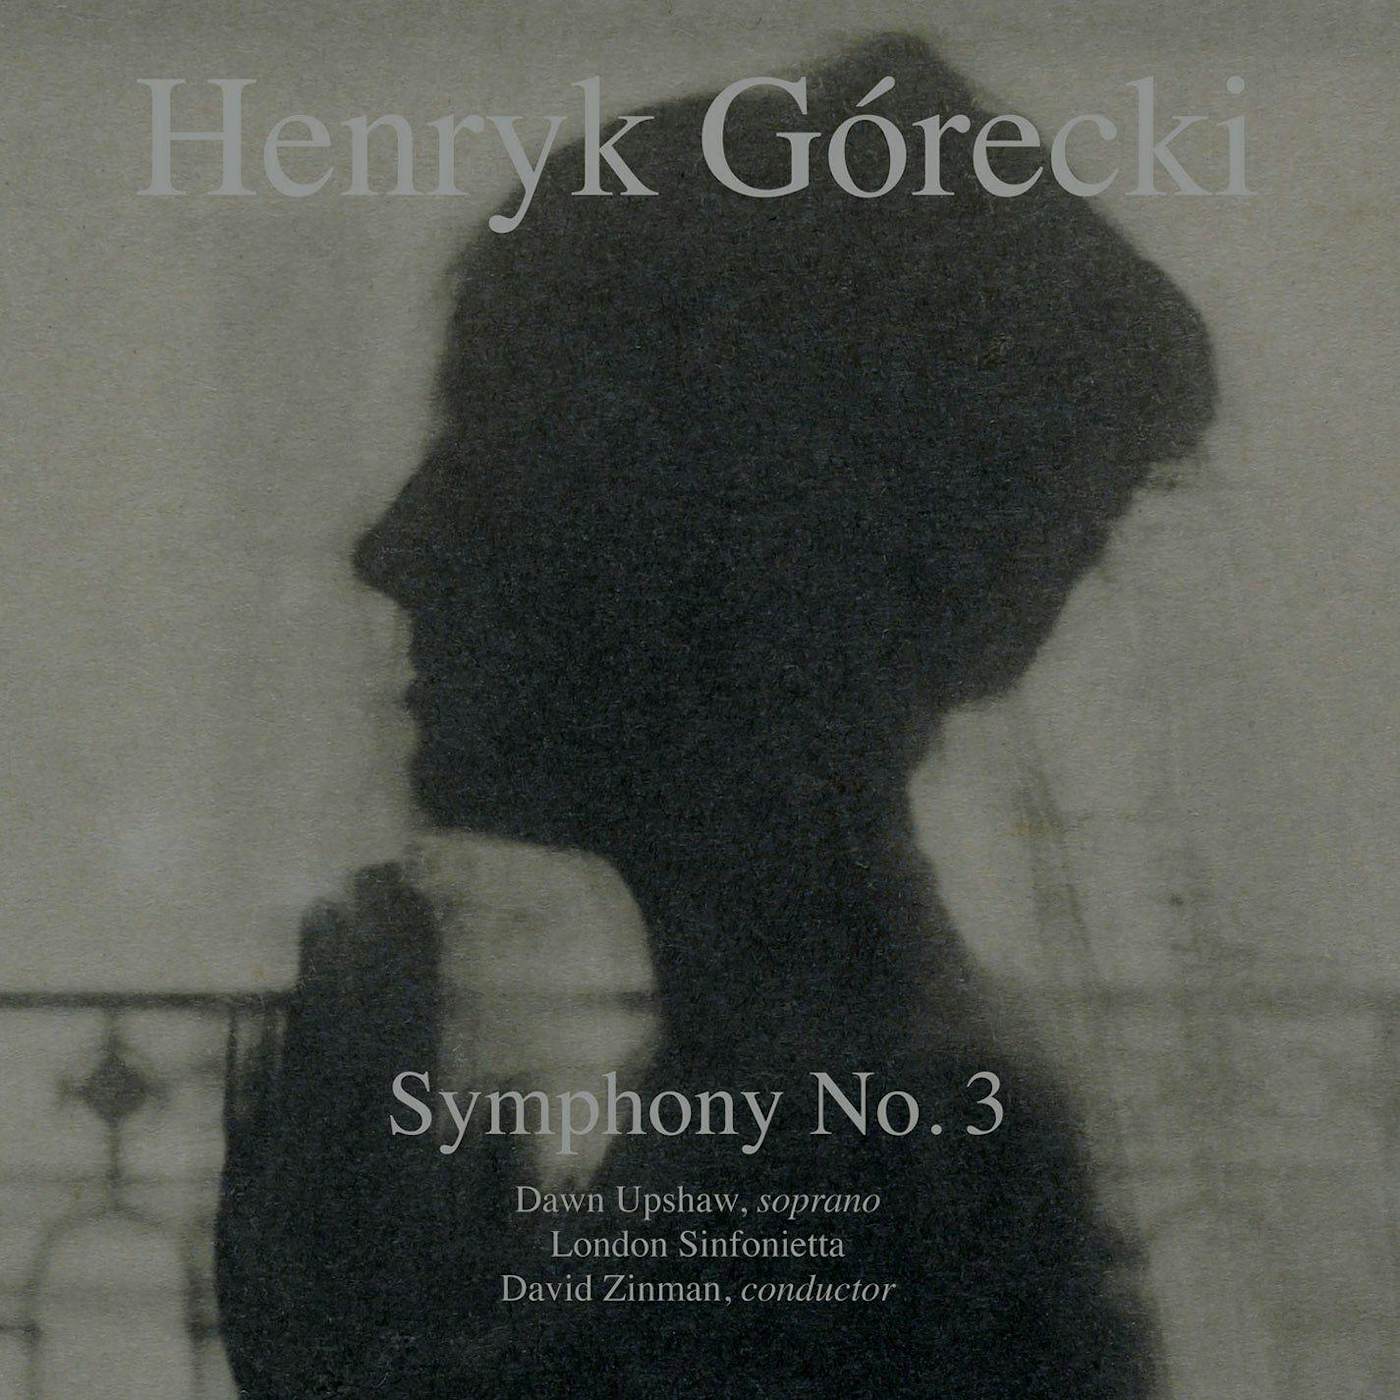 David Zinman Gorecki: Symphony No. 3 Vinyl Record